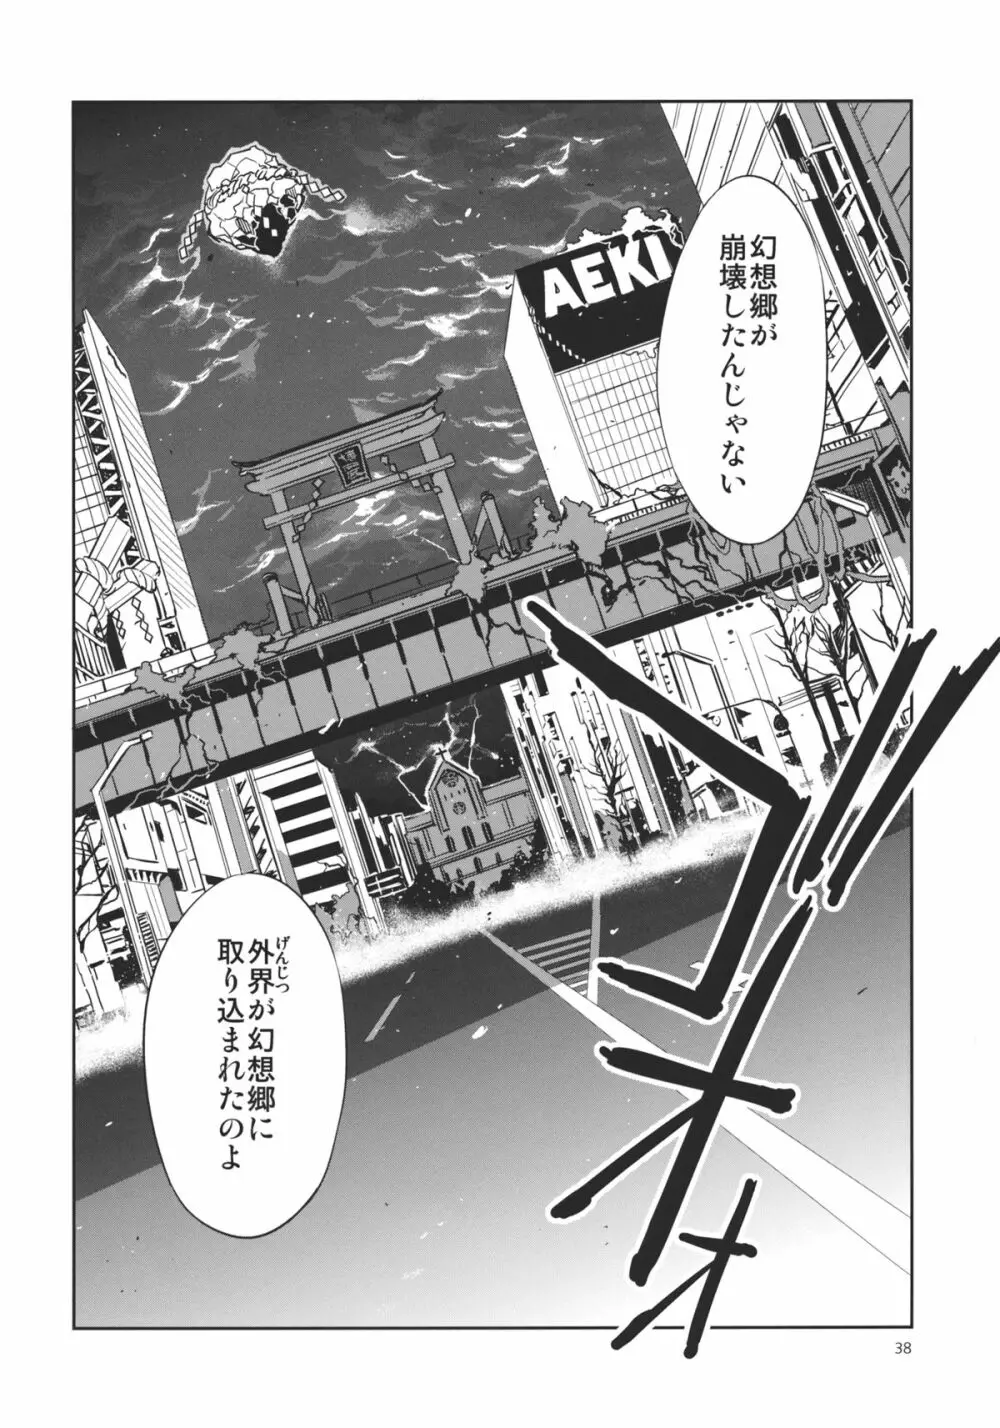 東方幻想崩壊弐 - page38